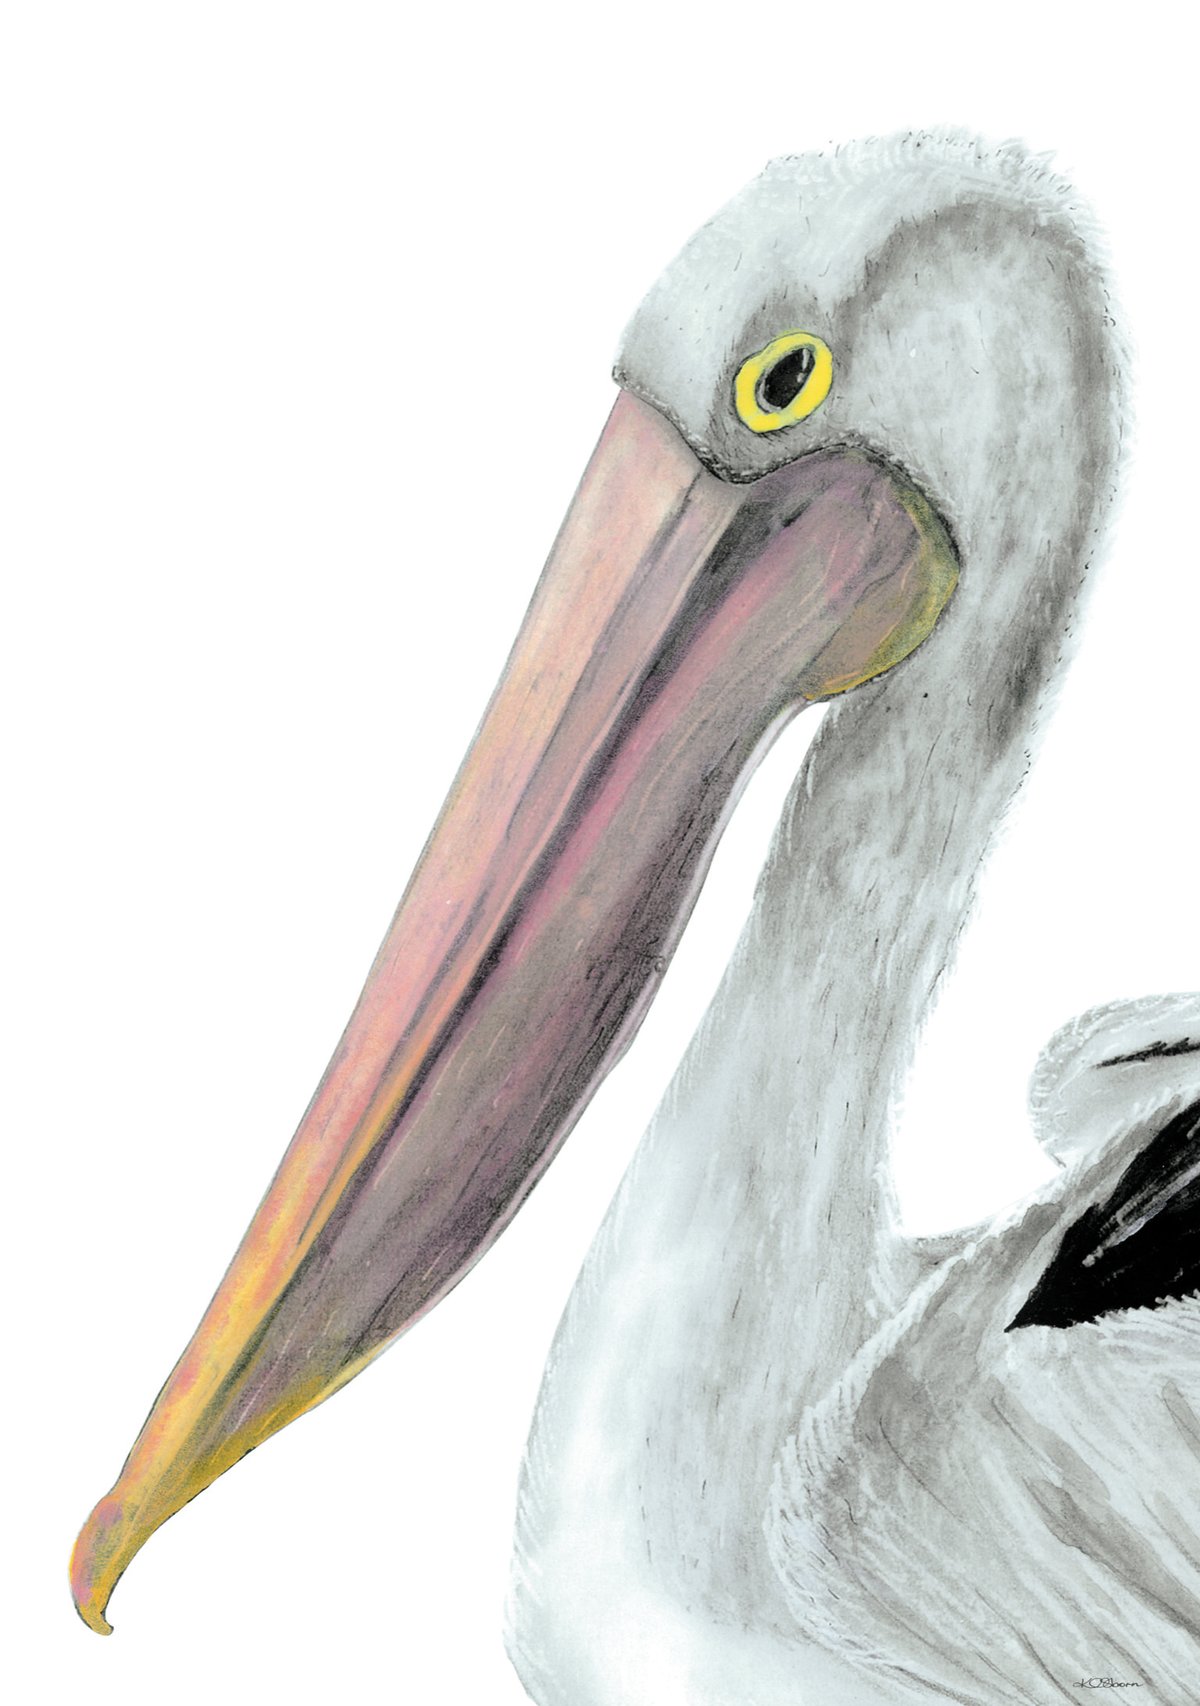 Image of Pelican Bill